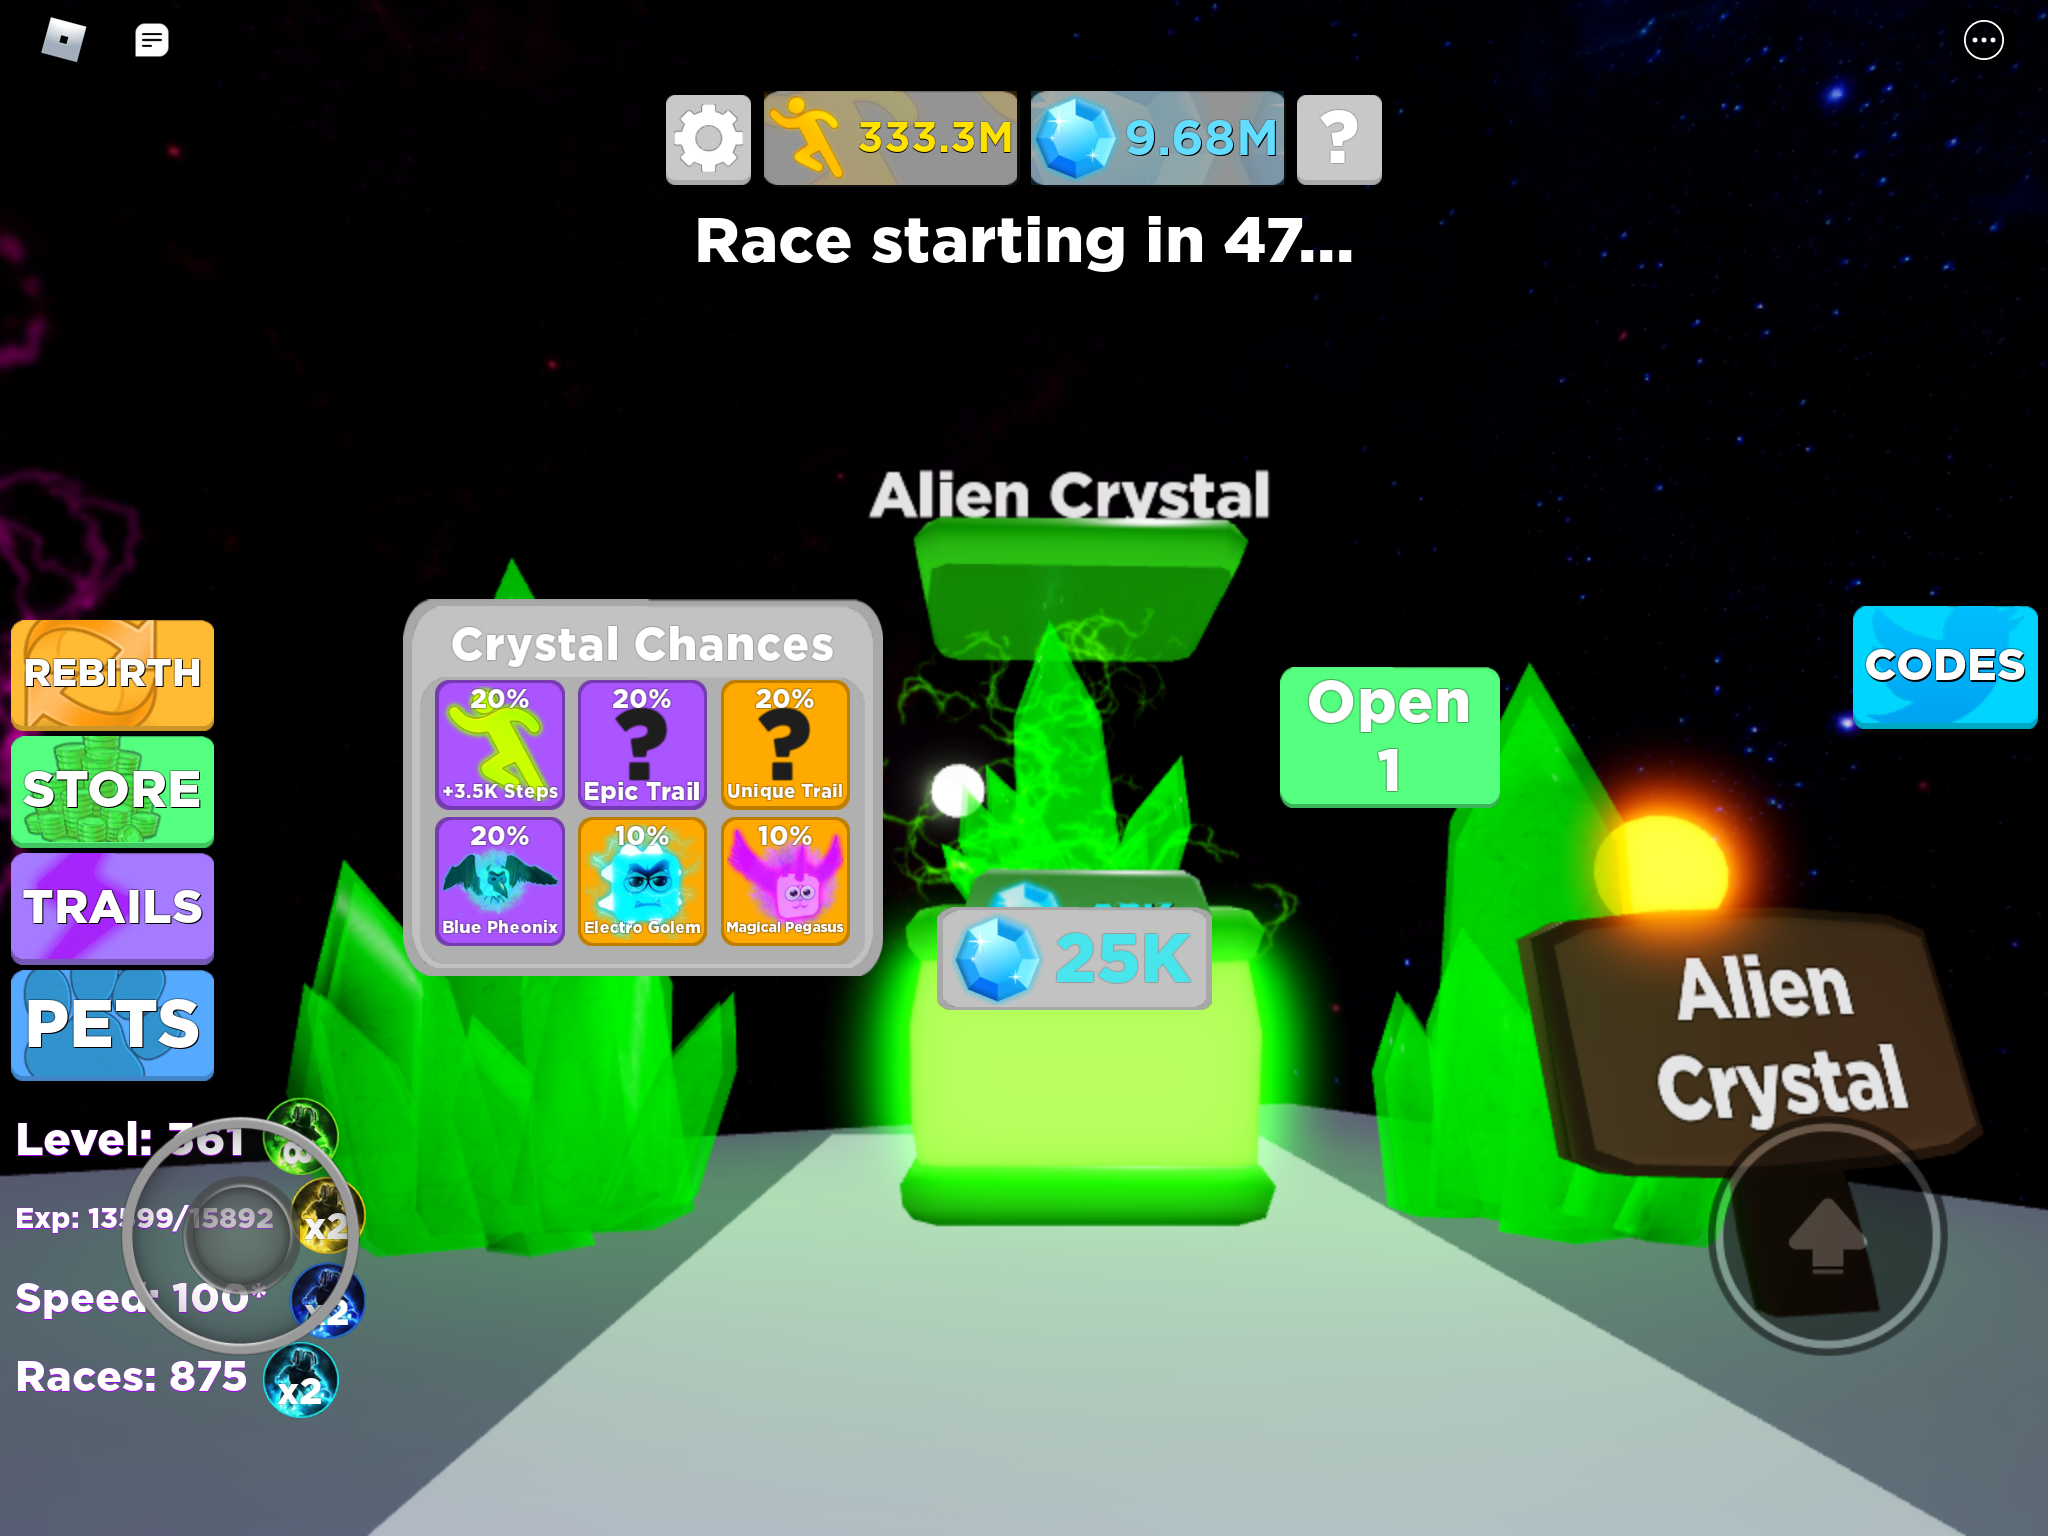 Alien Crystal Legends Of Speed Wiki Fandom - legend of speed roblox codes fandom